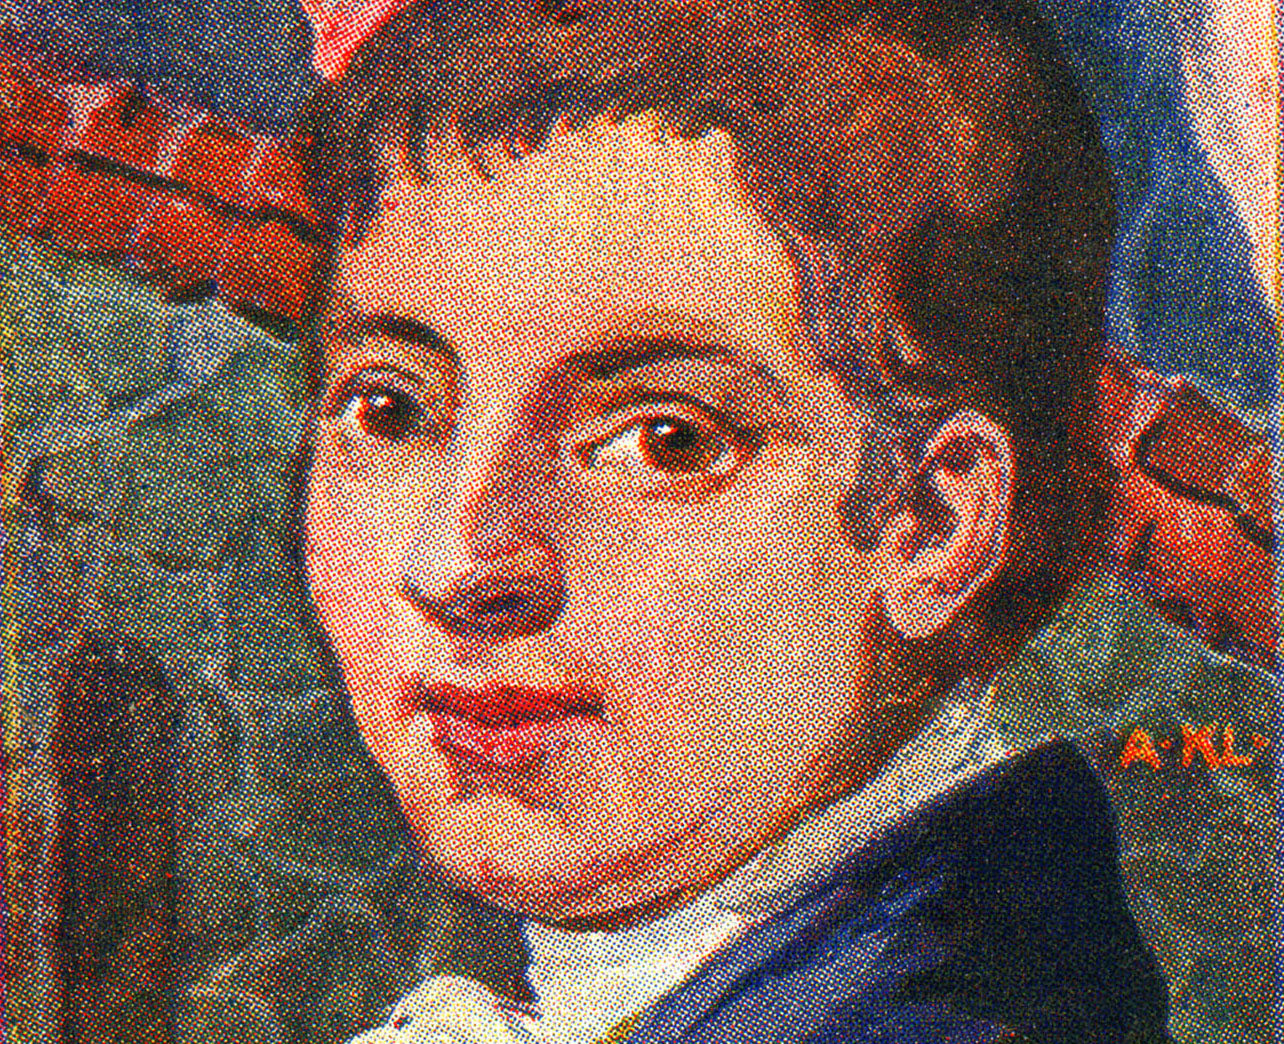 Pedro Heinrich Braga